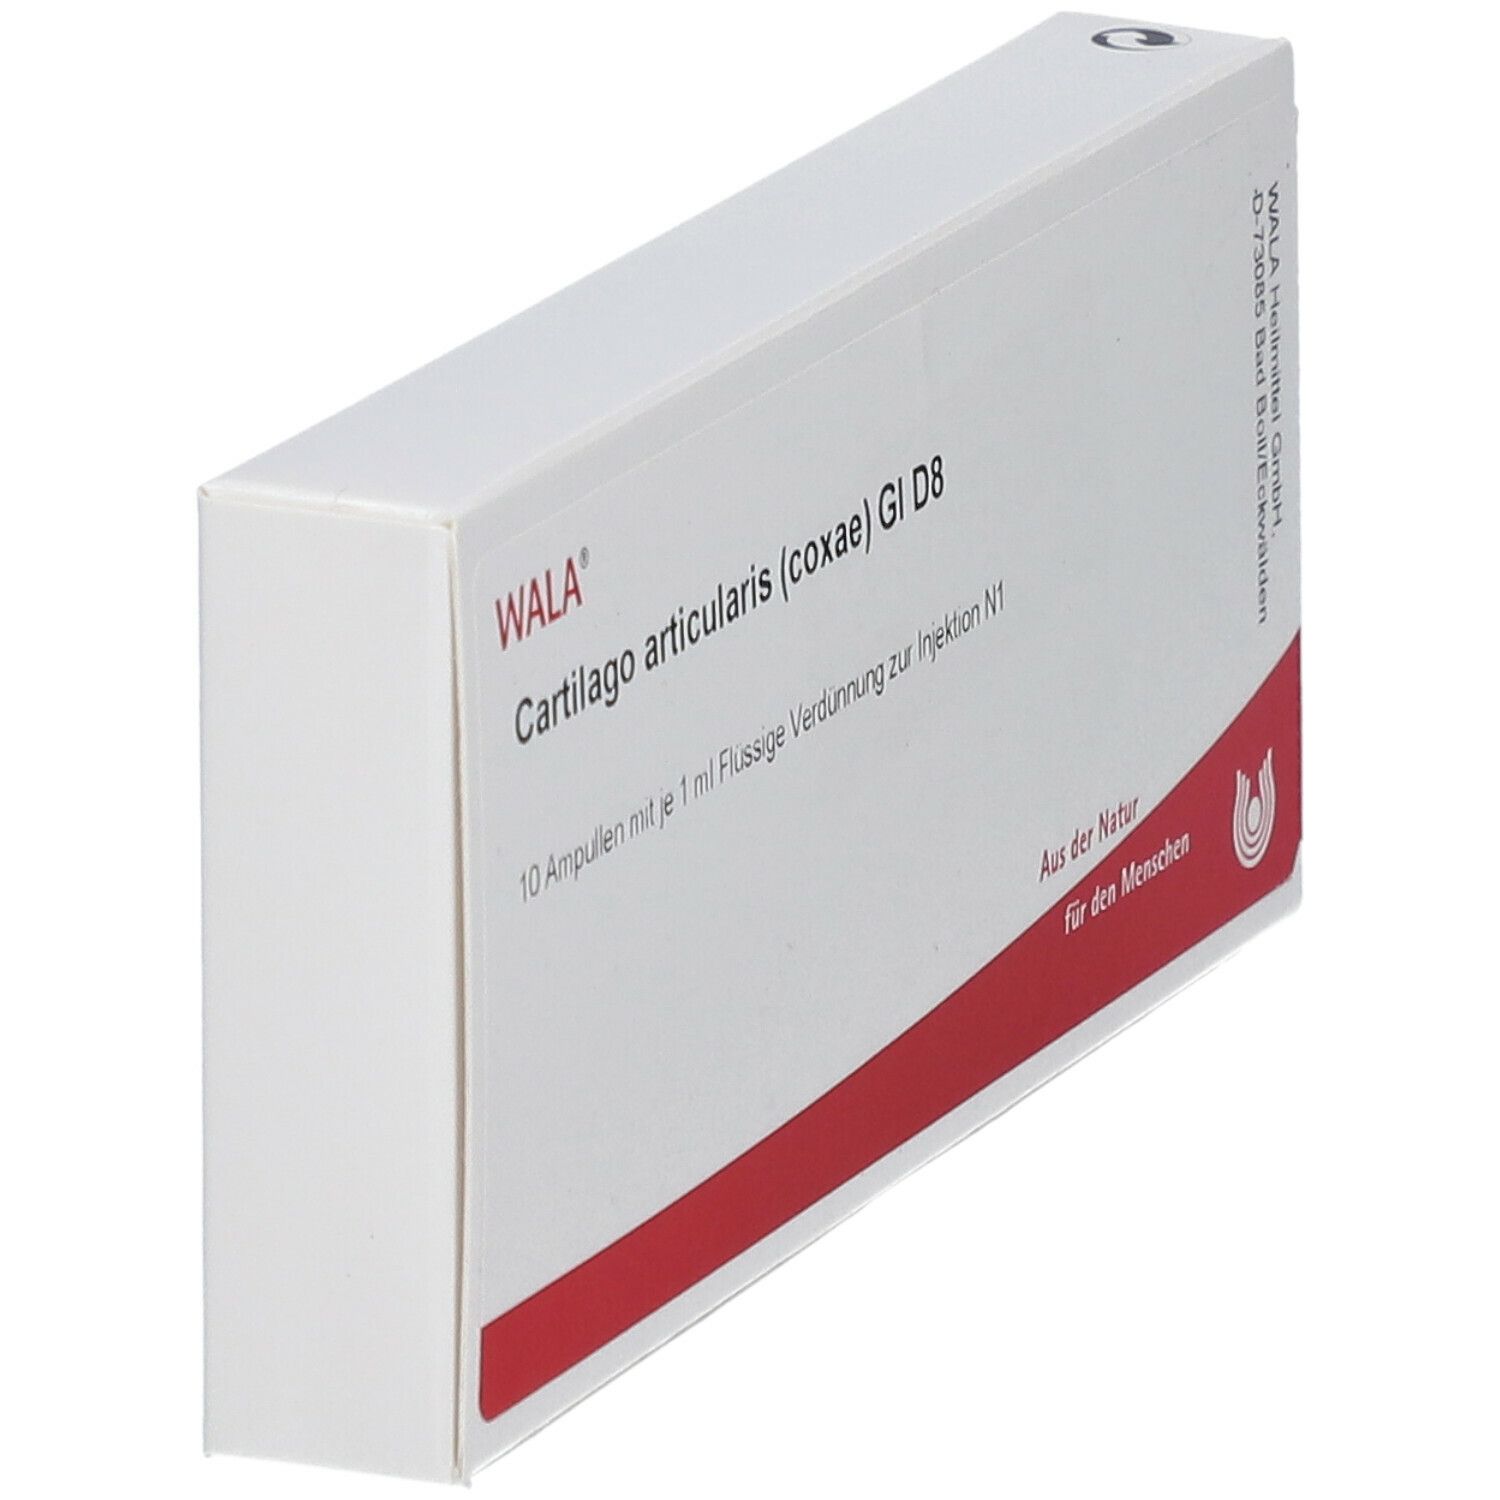 WALA® Cartilago articularis coxae Gl D 8